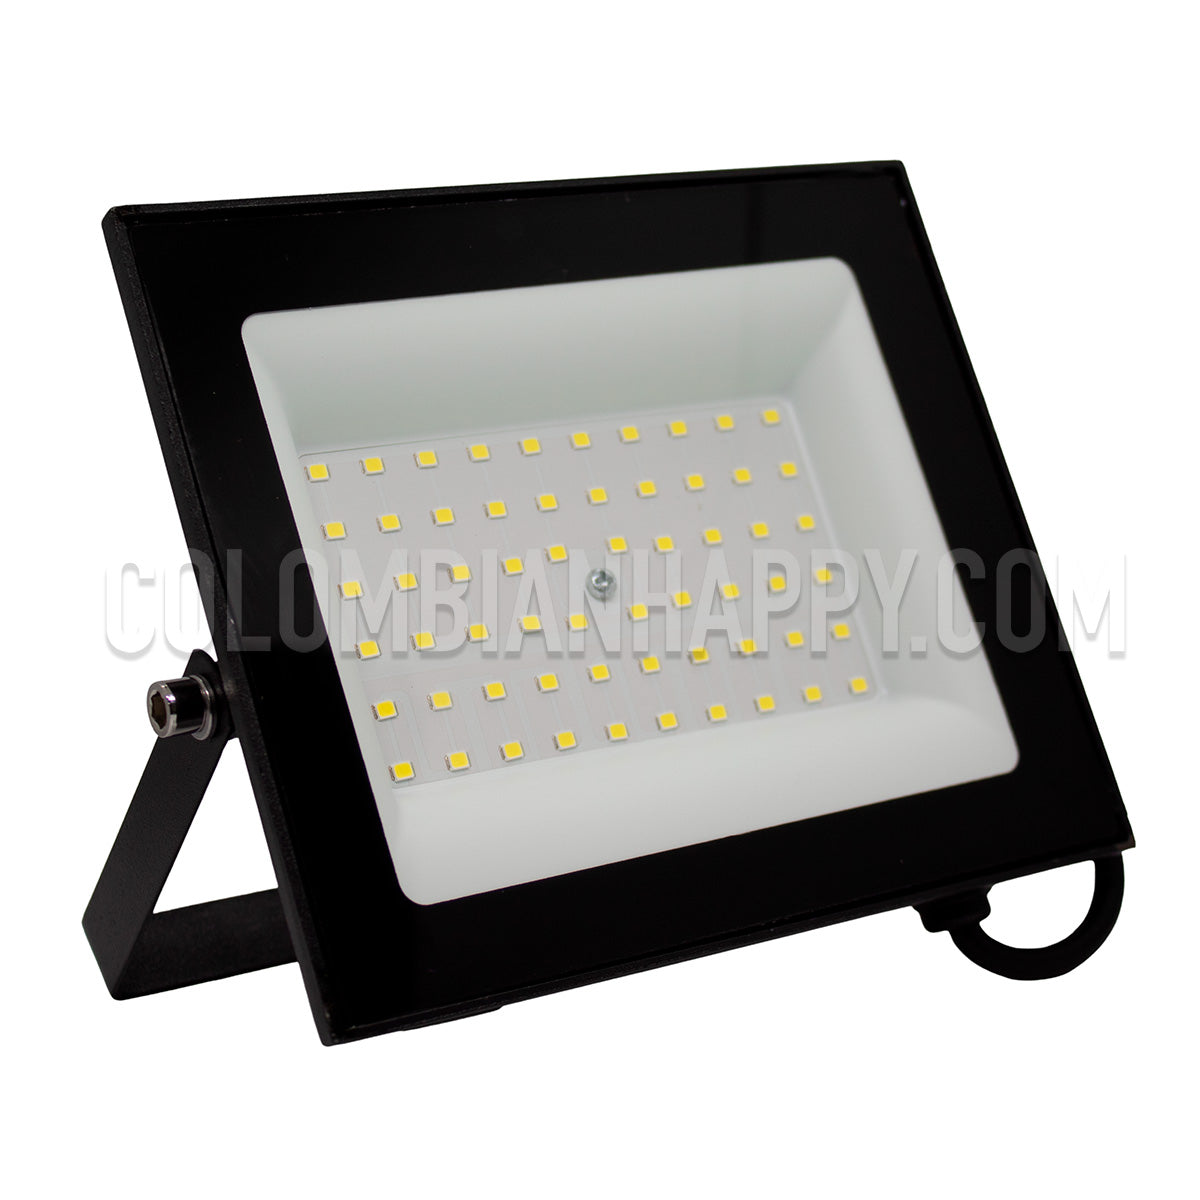 Reflector LED Tableta 100W luz blanca 6500K  IP: 65 Uso exterior  20.000 horas de vida  6500K Luz blanca  Voltaje: 100-265VAC  Flujo Luminoso: 8000 Im  índice de color: >80  ºC Máxima de trabajo -20ºC - 50ºC